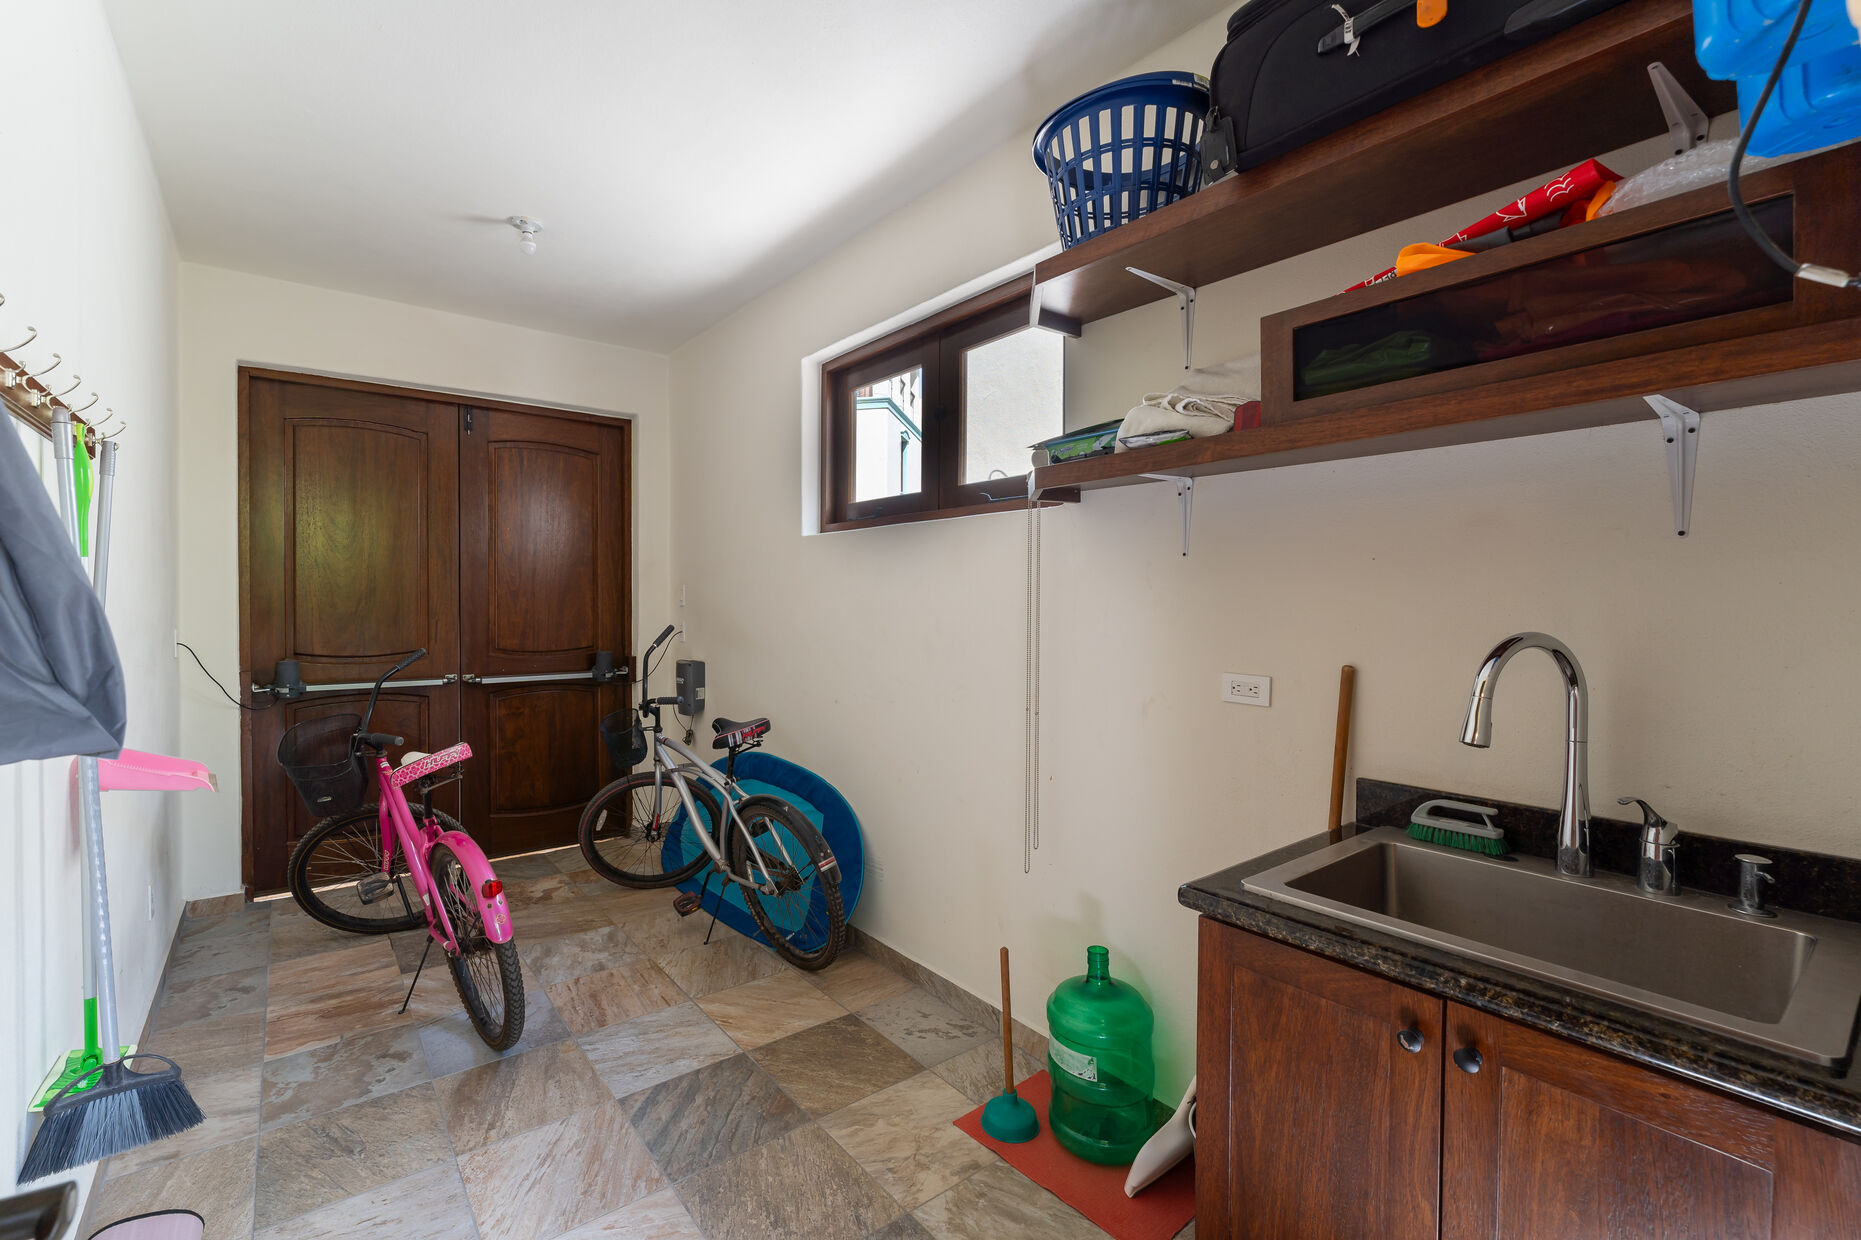 Garage Area / 2 Bikes / Sink